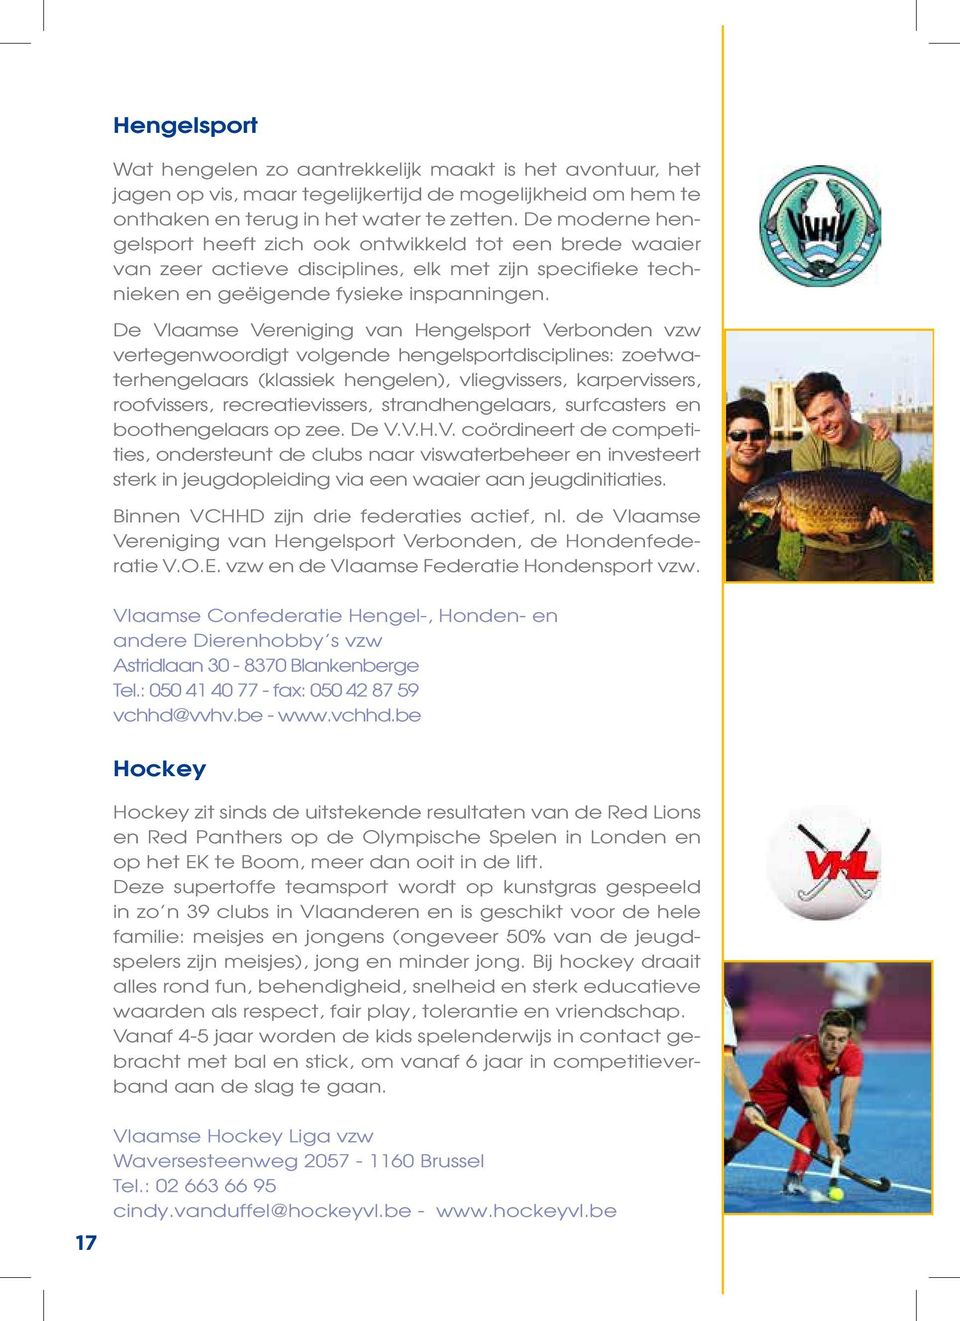 De Vlaamse Vereniging van Hengelsport Verbonden vzw vertegenwoordigt volgende hengelsportdisciplines: zoetwaterhengelaars (klassiek hengelen), vliegvissers, karpervissers, roofvissers,